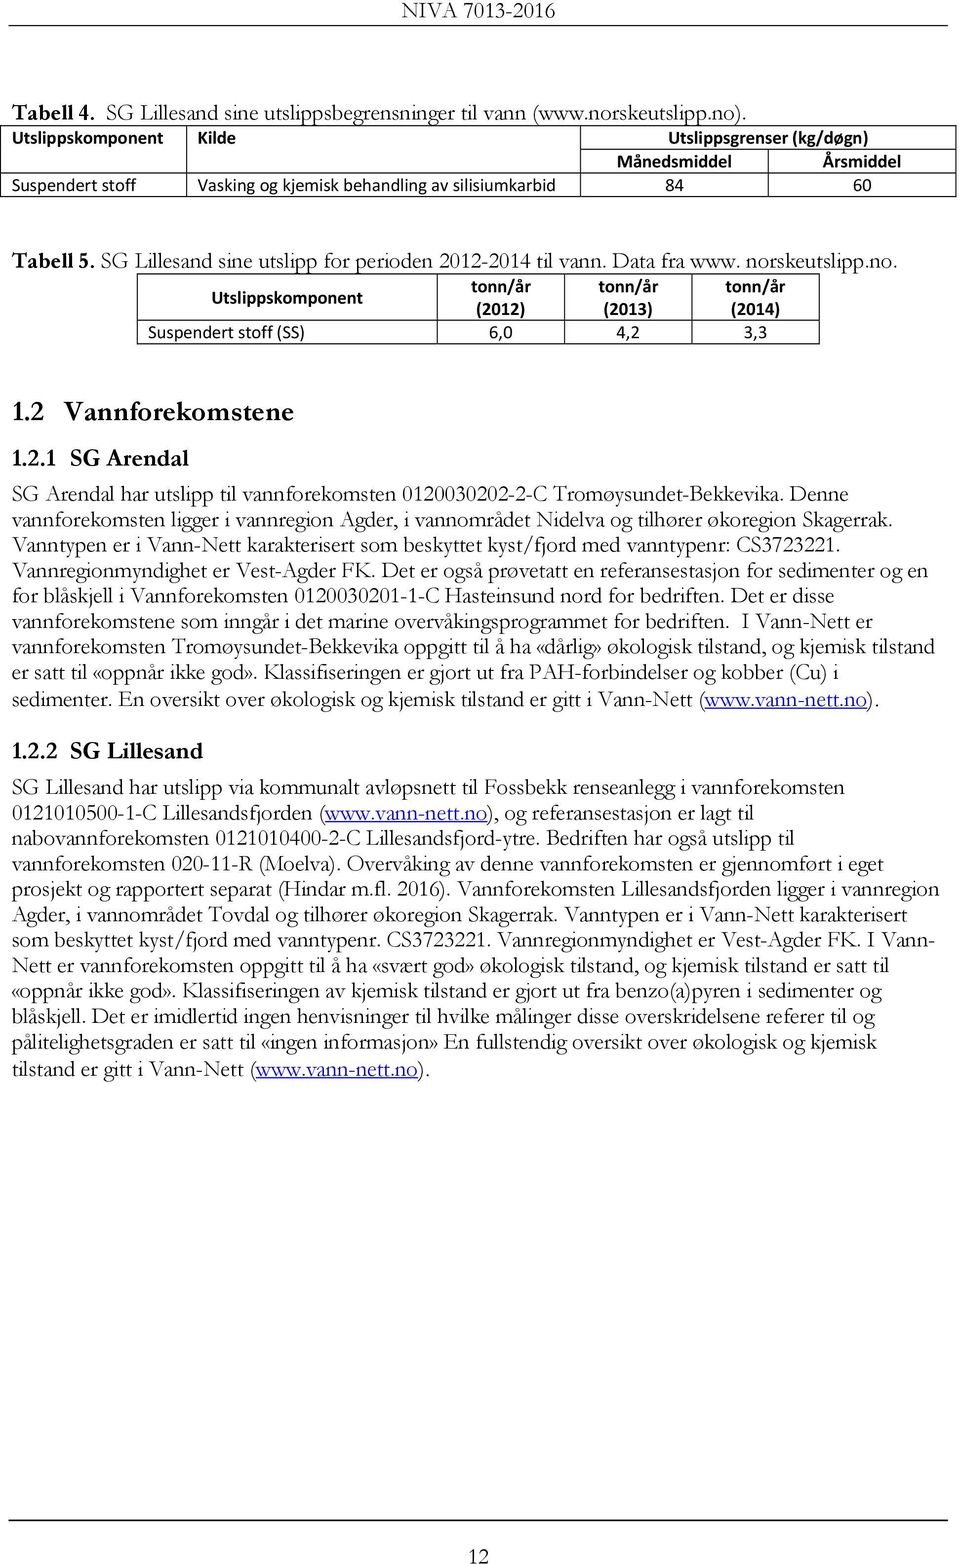 SG Lillesand sine utslipp for perioden 2012-2014 til vann. Data fra www. norskeutslipp.no. tonn/år tonn/år tonn/år Utslippskomponent (2012) (2013) (2014) Suspendert stoff (SS) 6,0 4,2 3,3 1.